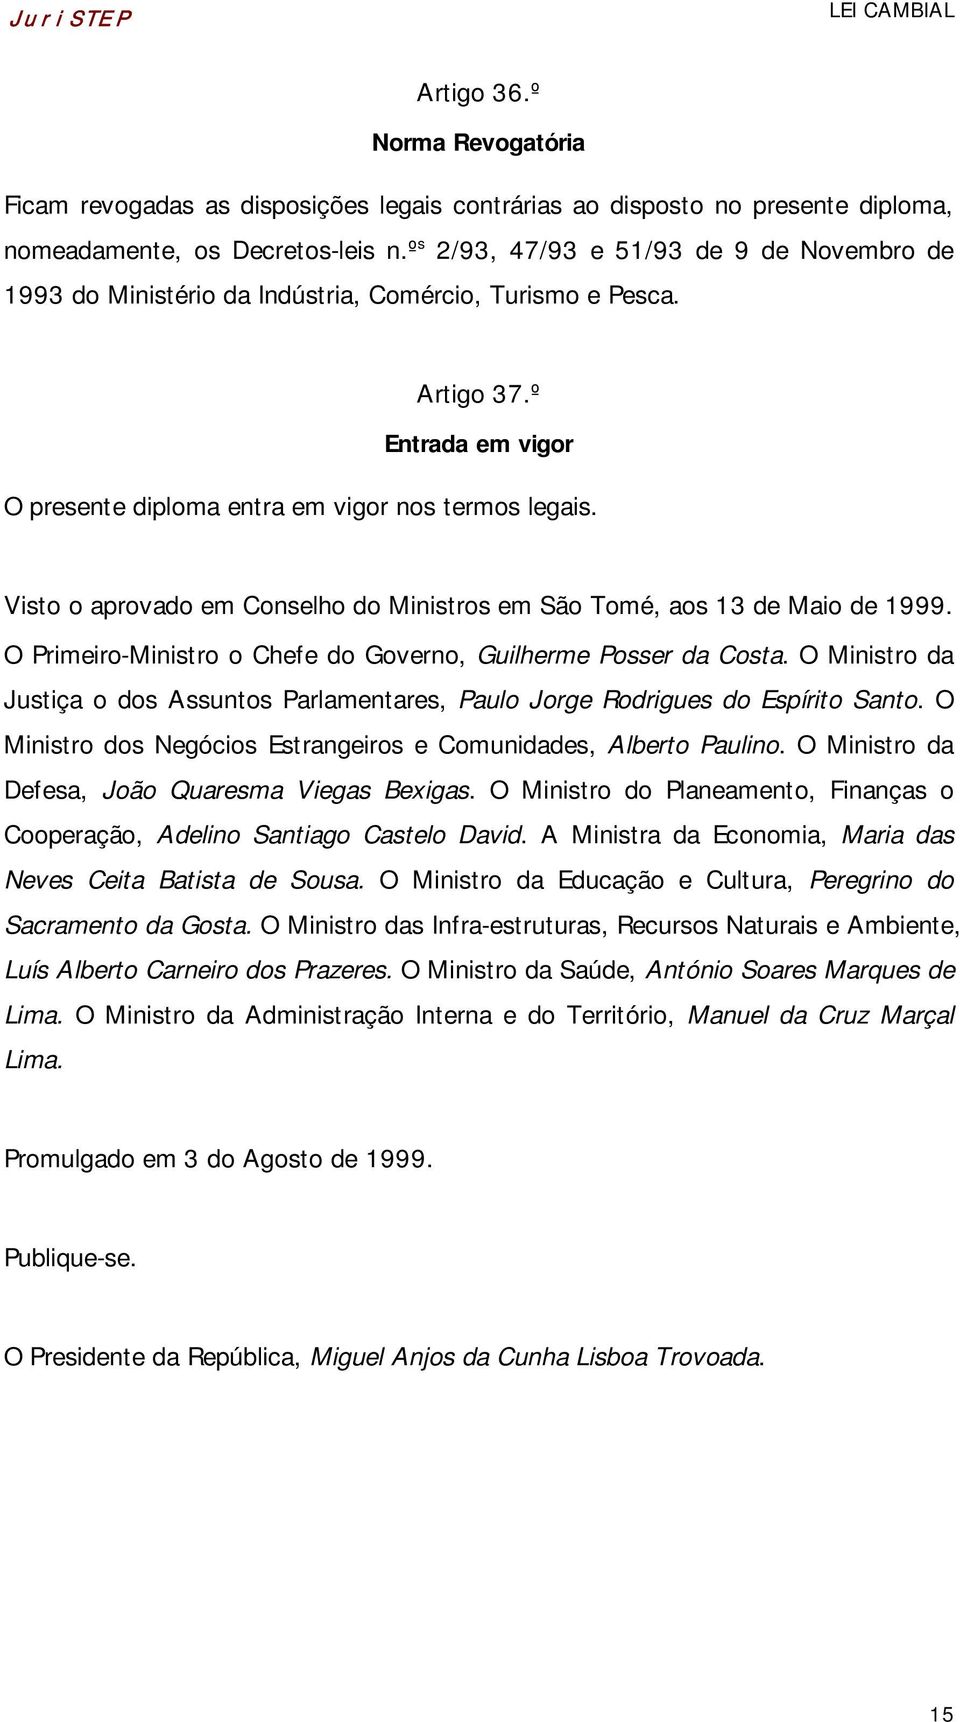 Visto o aprovado em Conselho do Ministros em São Tomé, aos 13 de Maio de 1999. O Primeiro-Ministro o Chefe do Governo, Guilherme Posser da Costa.